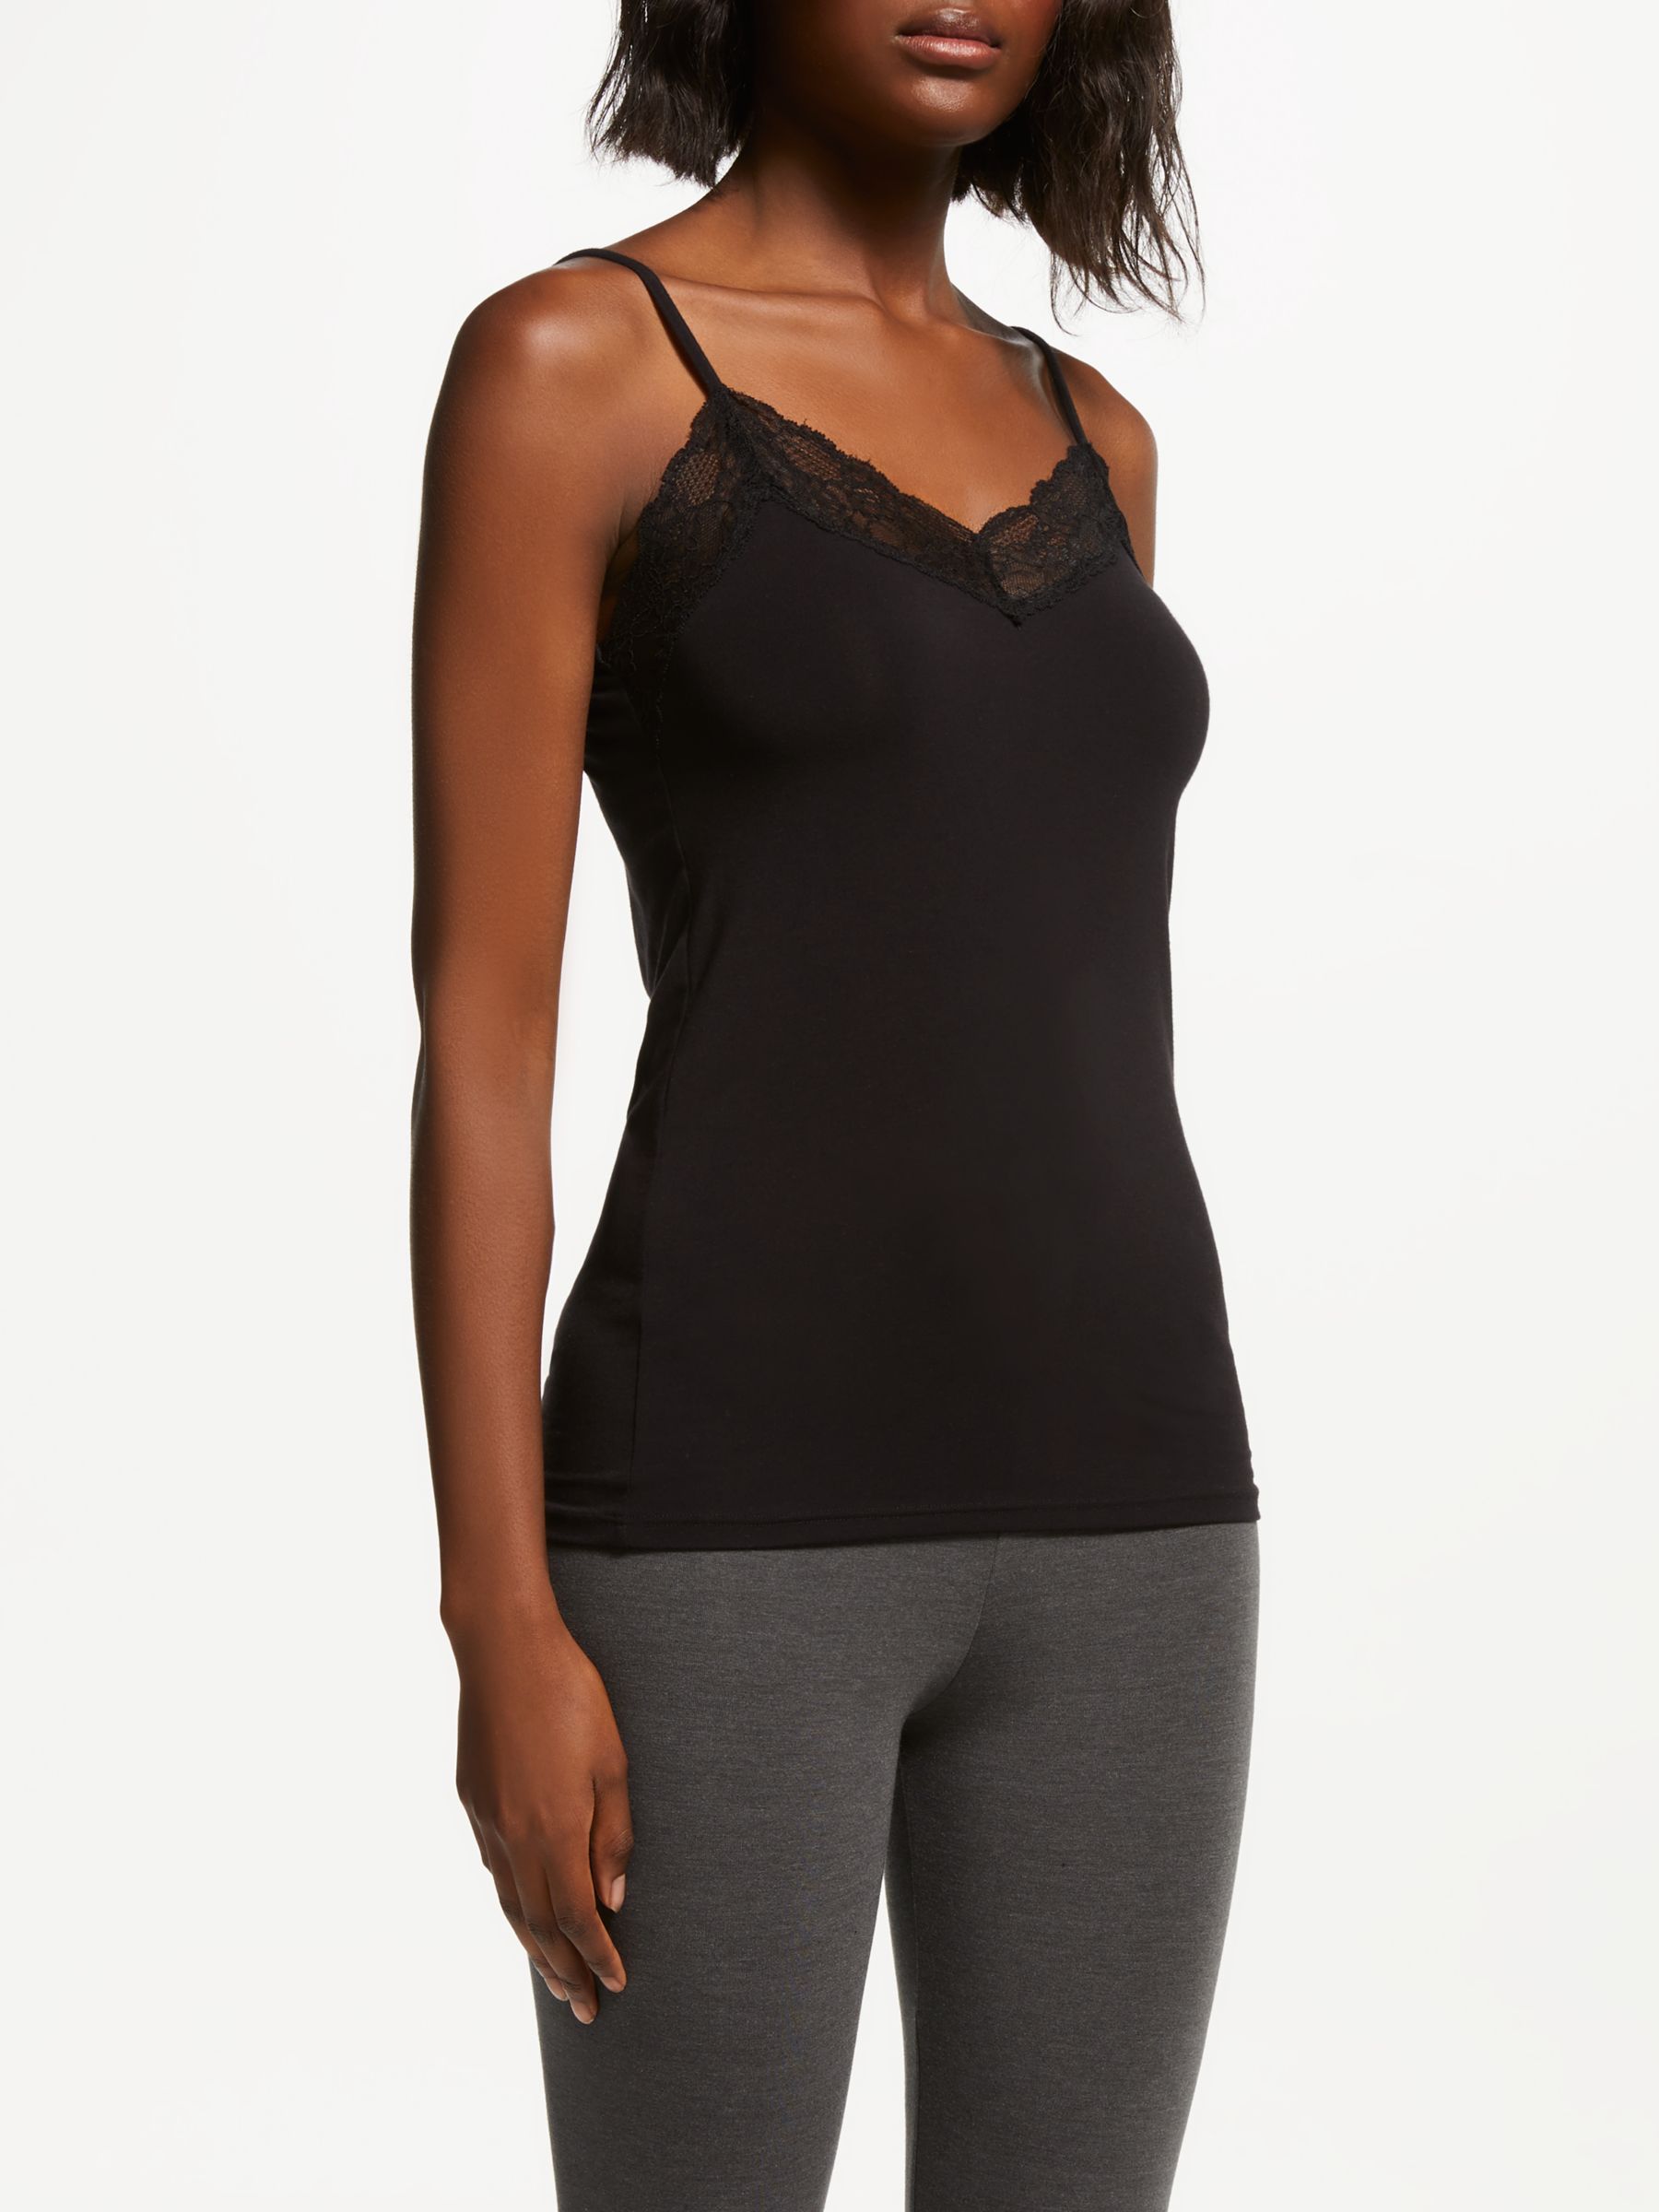 Women's Thermal Inner Fleeces Sleeveless Undershirt Built-in Bra Thermal  Vest V Free Shipping